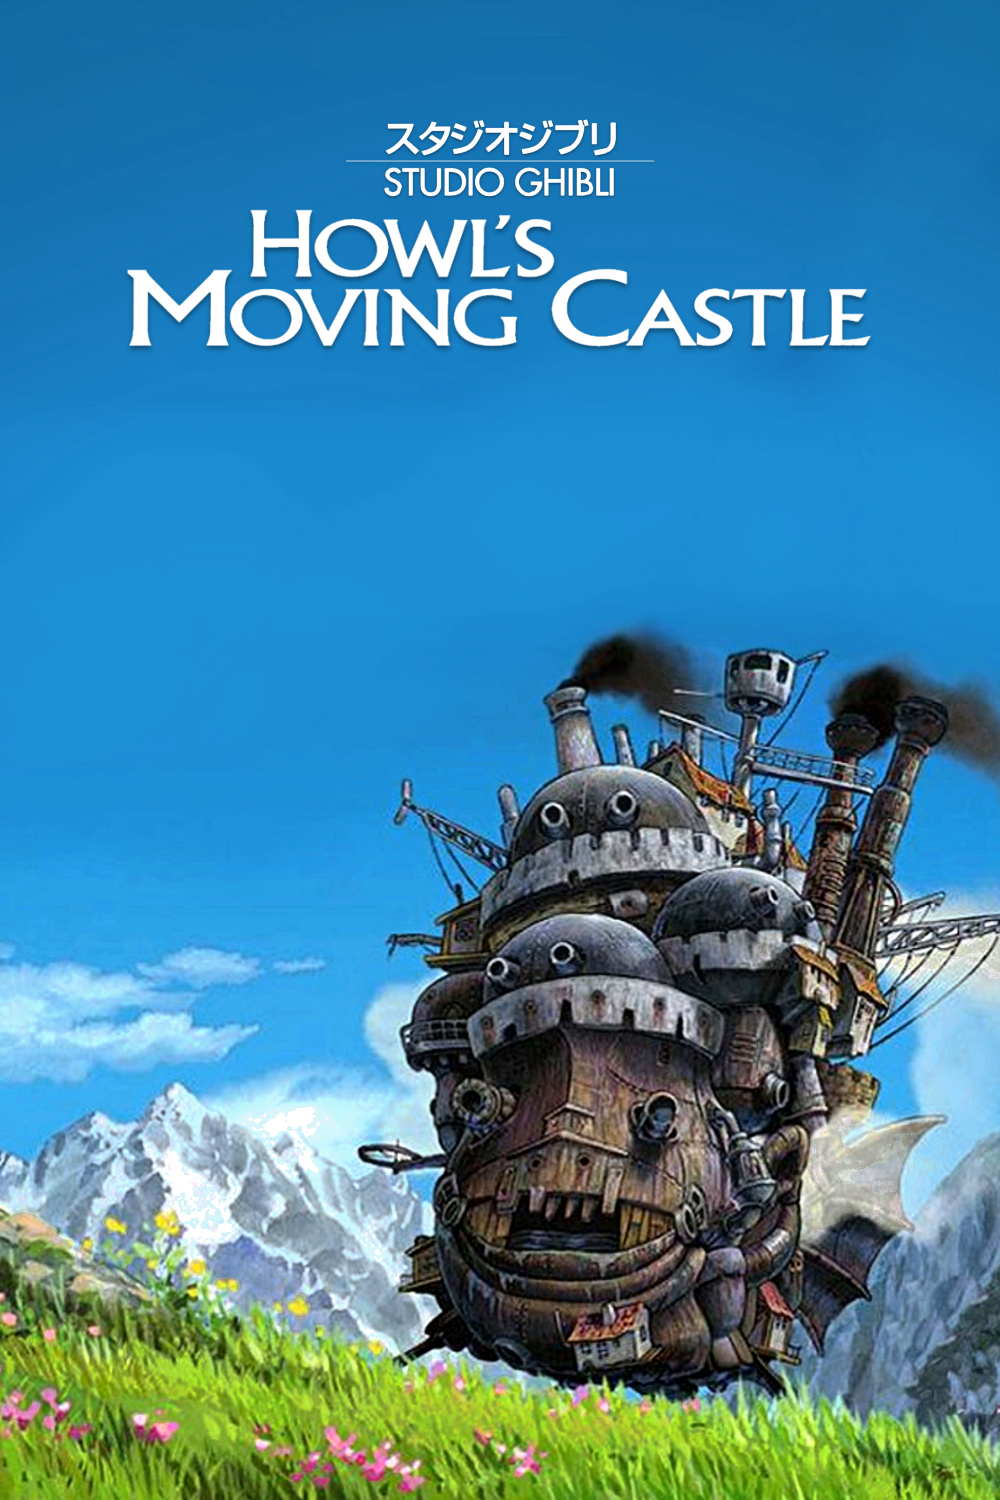 Xem Phim Lâu đài bay của pháp sư Howl (Howl’s Moving Castle)